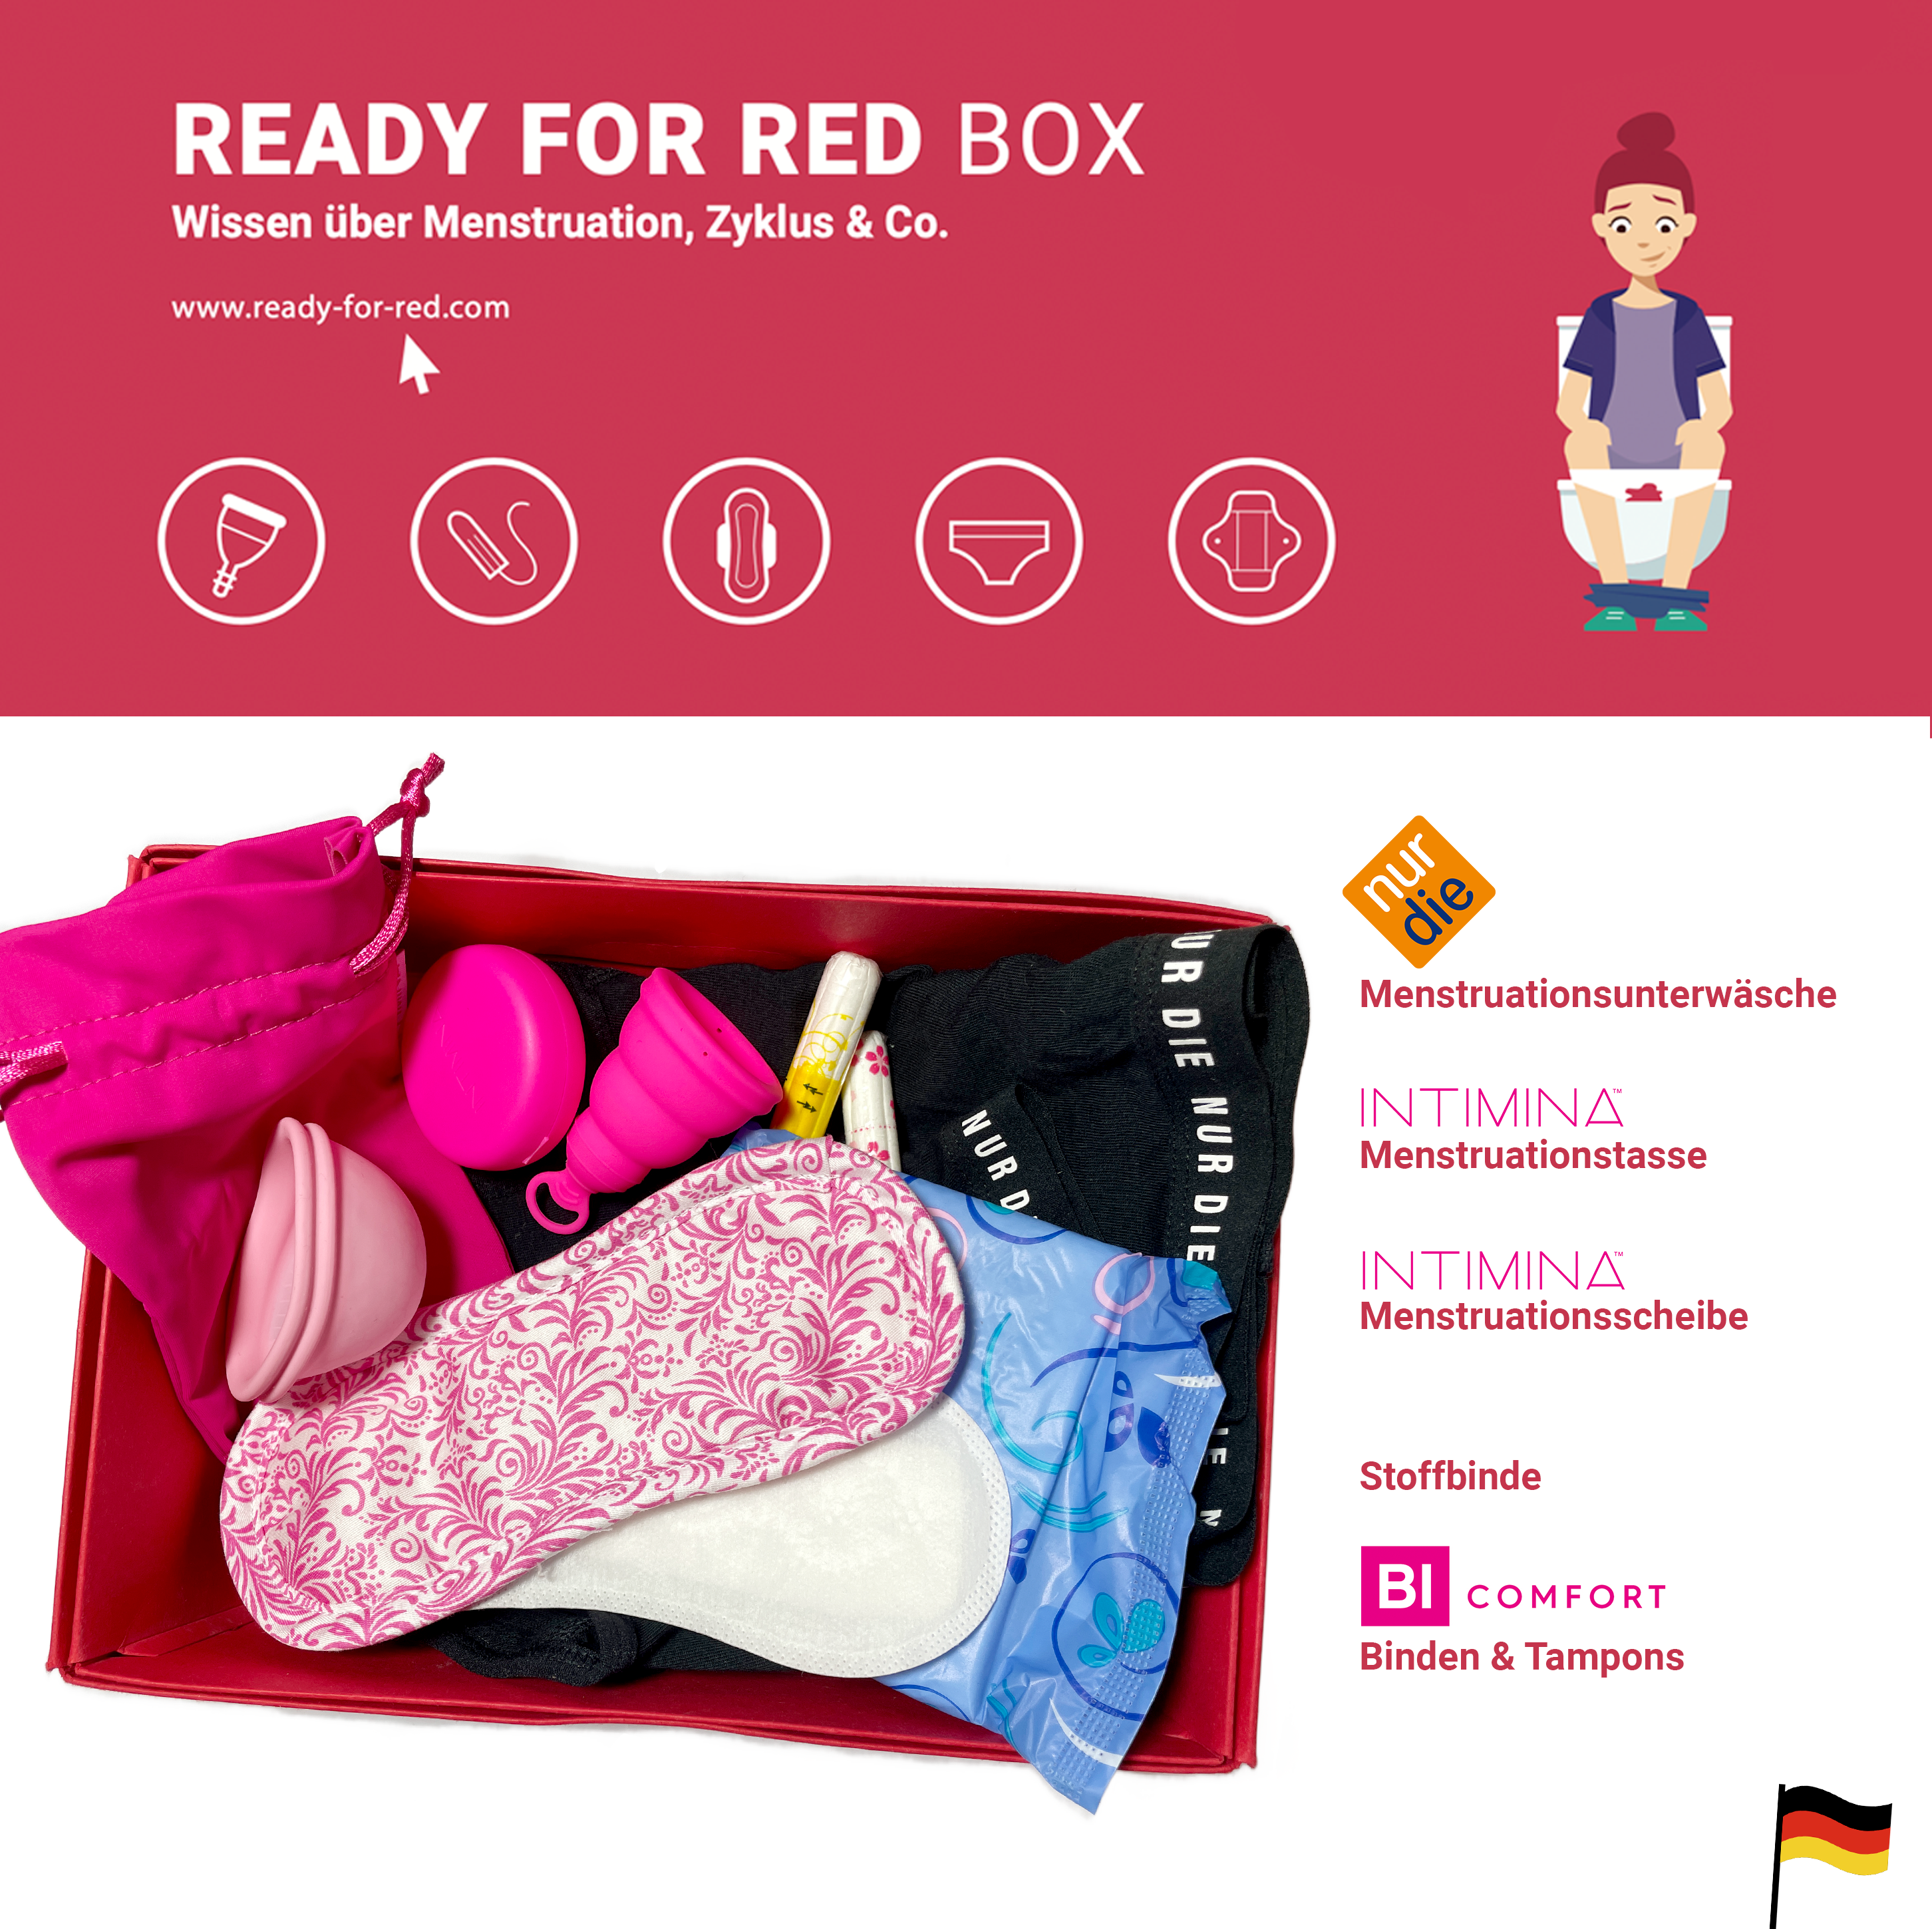 Ein Foto der READY FOR RED Box in der ein Periodenslip von nur die, eine Stoffbinde, eine Menstruationstasse von Intimina, eine Menstruationsscheibe von Intimina, sowie Binden und Tampons von bi comfort enthalten sind. Daneben stehen die Logos der Sponsor*innen. Unten eine deutsche Flagge für die deutsche Box.